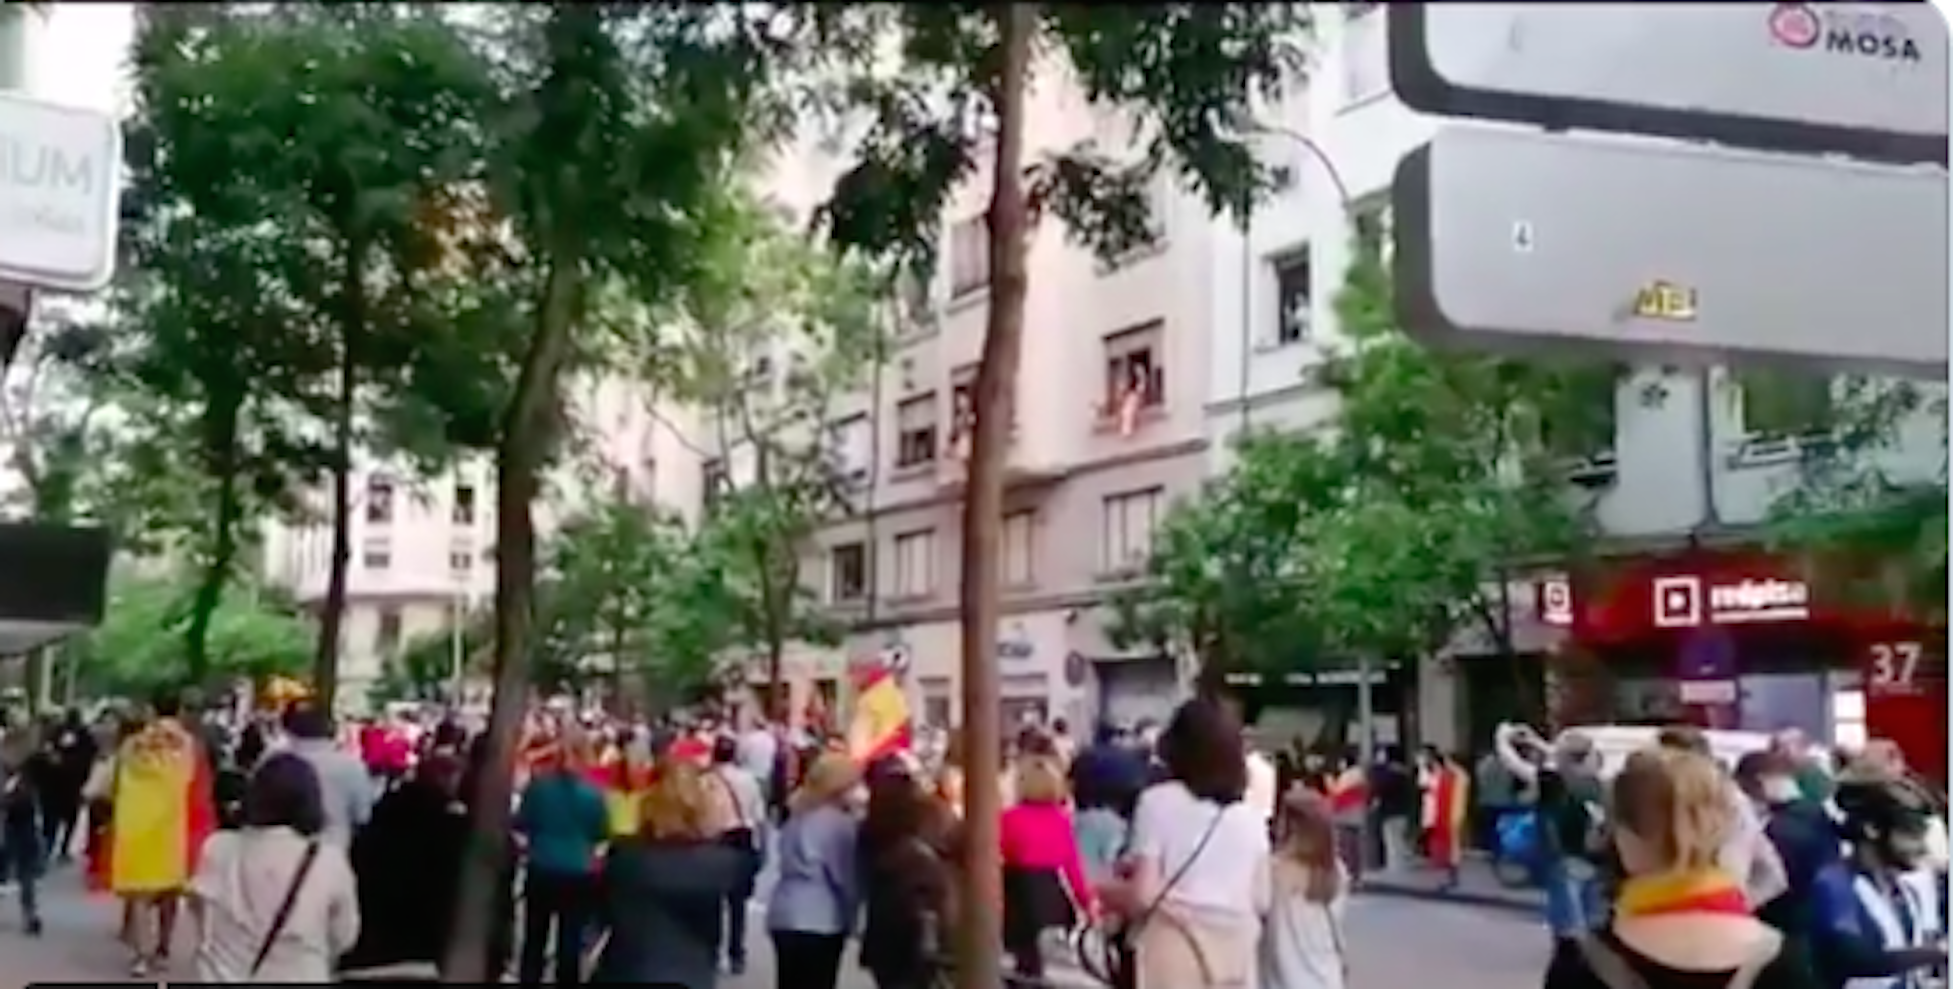 VIDEO | Las protestas ultras suben el tono e incorporan escraches